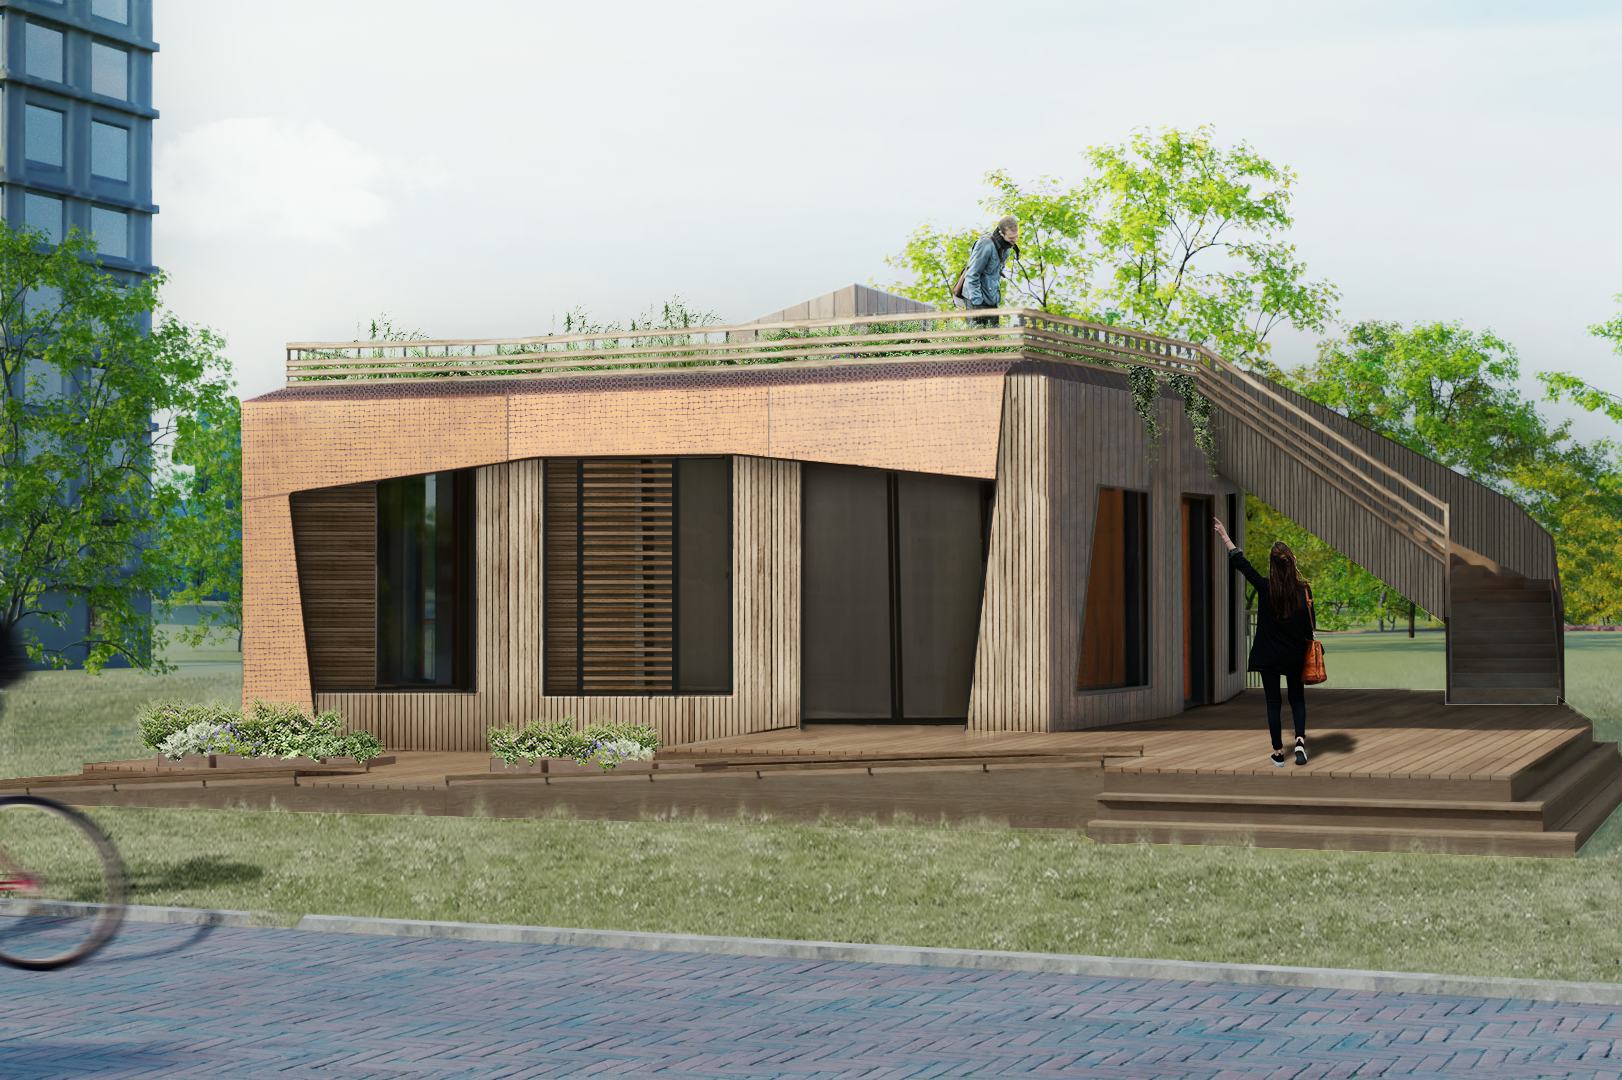 Impressie ontwerp huis 'Ripple' door studententeam VIRTUe op de TU/e campus. Beeld VIRTUe